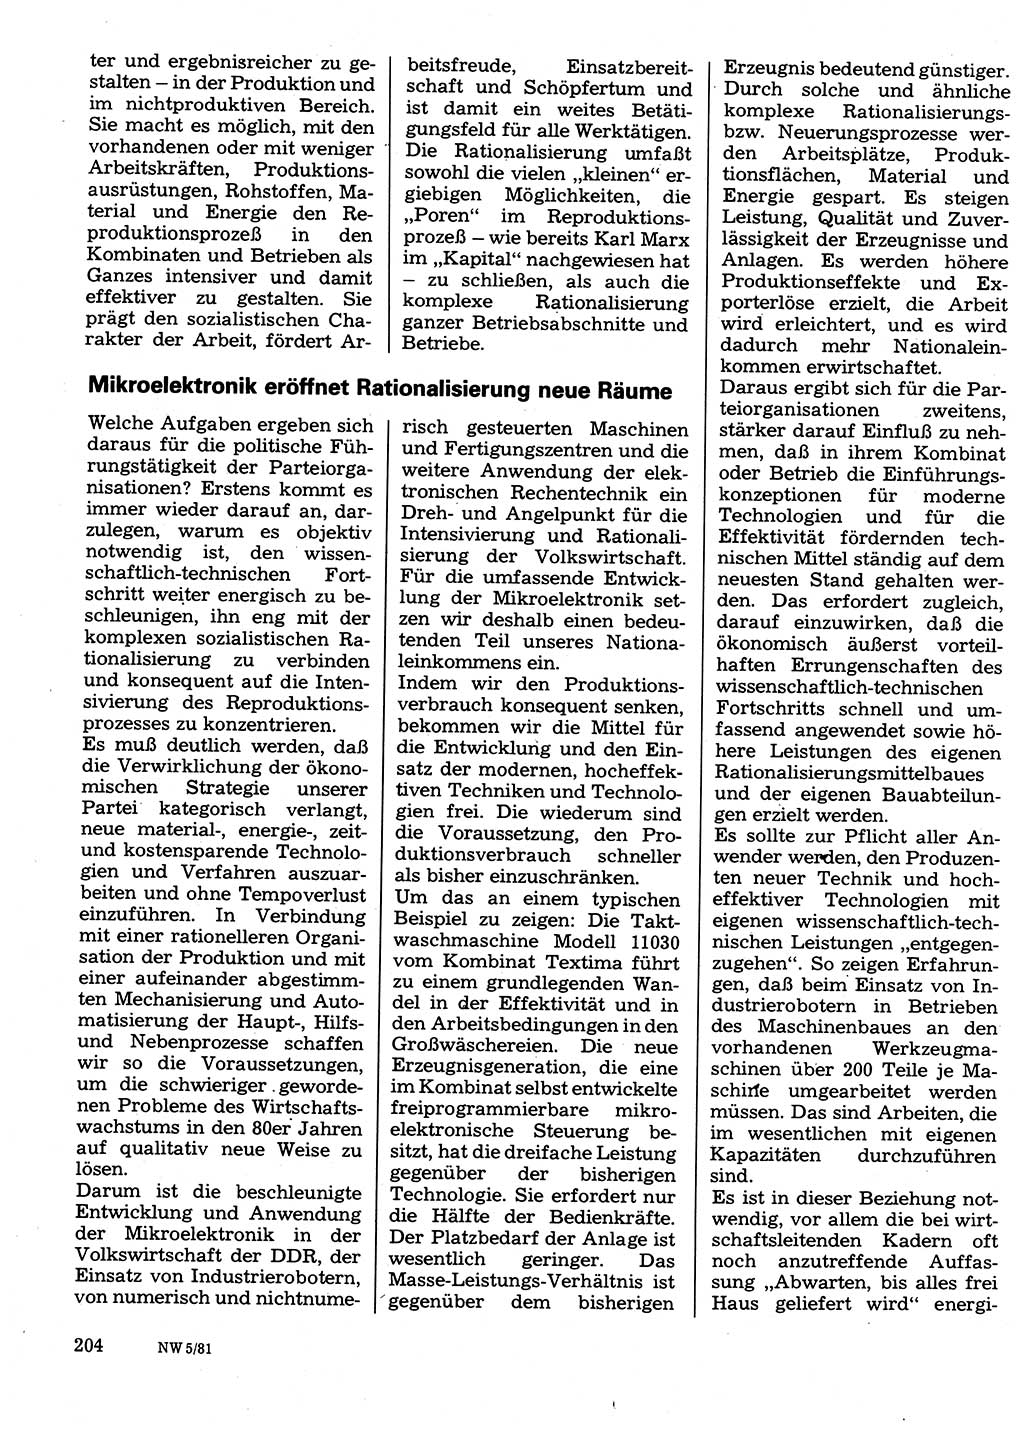 Neuer Weg (NW), Organ des Zentralkomitees (ZK) der SED (Sozialistische Einheitspartei Deutschlands) für Fragen des Parteilebens, 36. Jahrgang [Deutsche Demokratische Republik (DDR)] 1981, Seite 204 (NW ZK SED DDR 1981, S. 204)